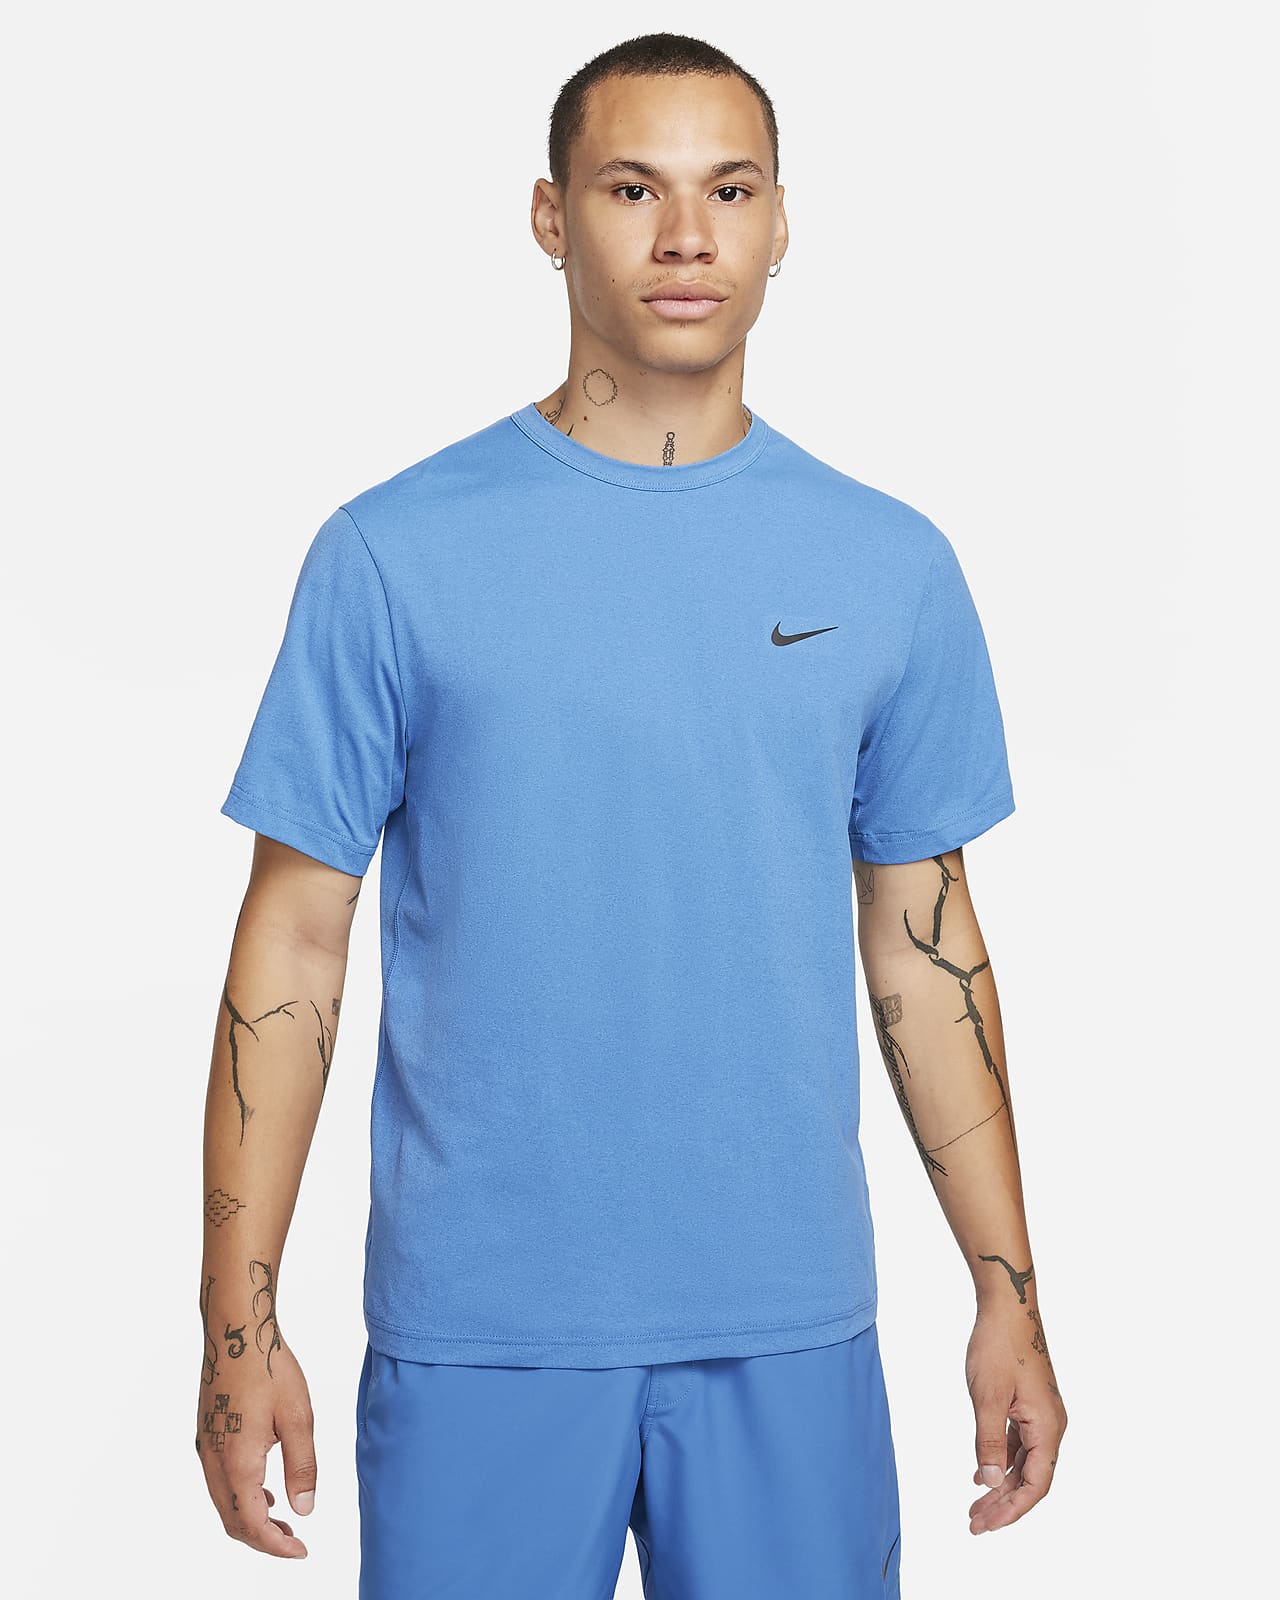 Ανδρική ευέλικτη κοντομάνικη μπλούζα Dri-FIT UV Nike Hyverse